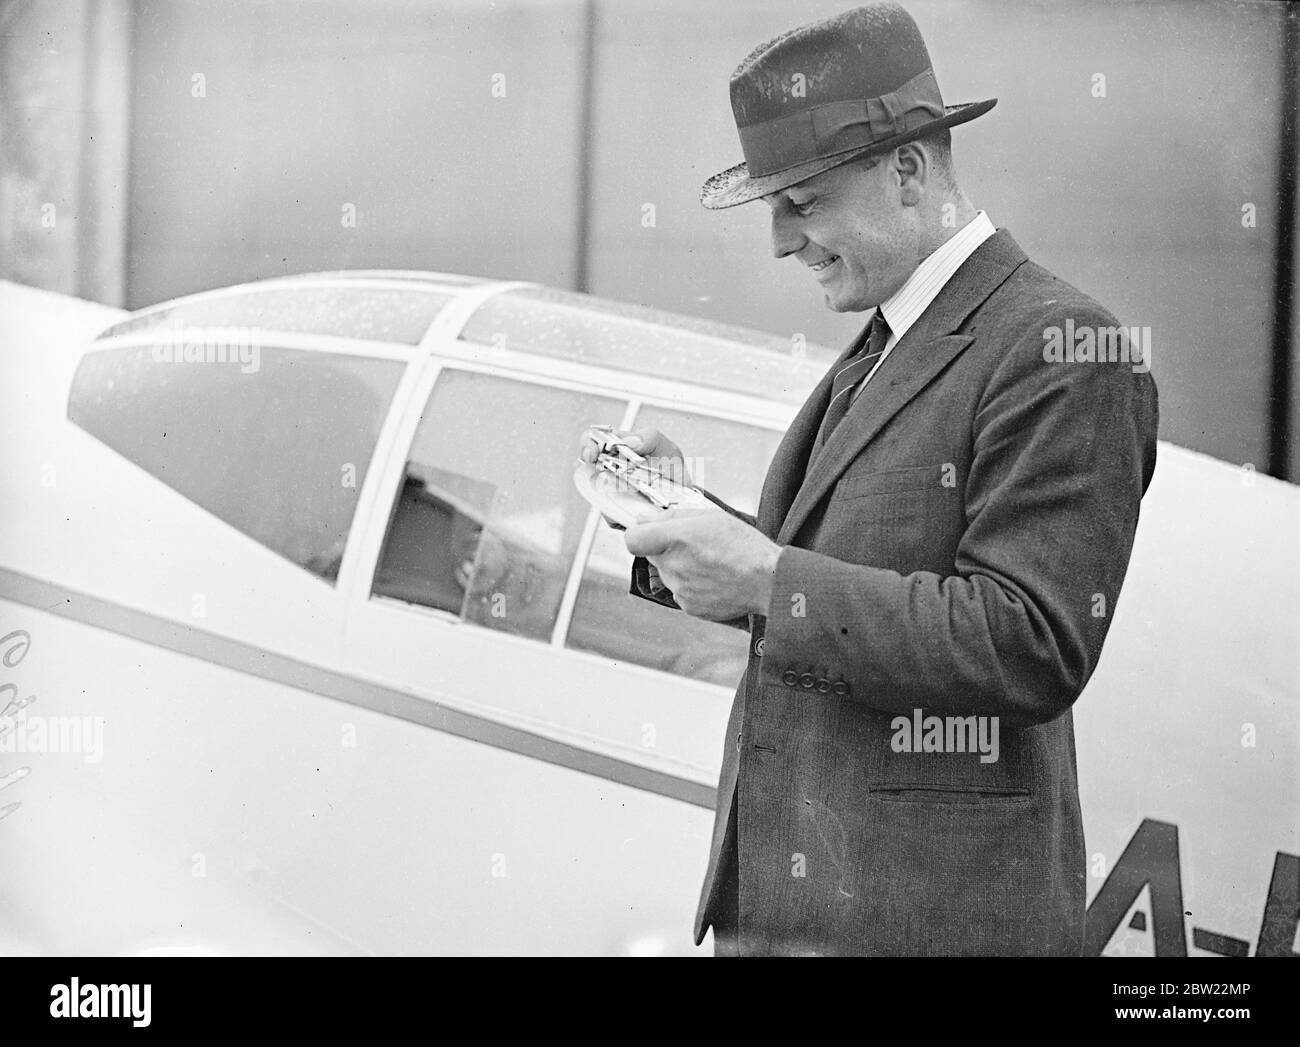 Die Piloten machten die letzten Vorbereitungen auf dem Flugplatz Hatfield, um den Start des Kings Cup-Flugrennens zu starten. Kapitän E.W Percival der Flugzeugdesigner, Einstellung der Kurs und Richtungen Suche Apparat der Percival Möwe, die er im Rennen fliegt. September 1937 Stockfoto